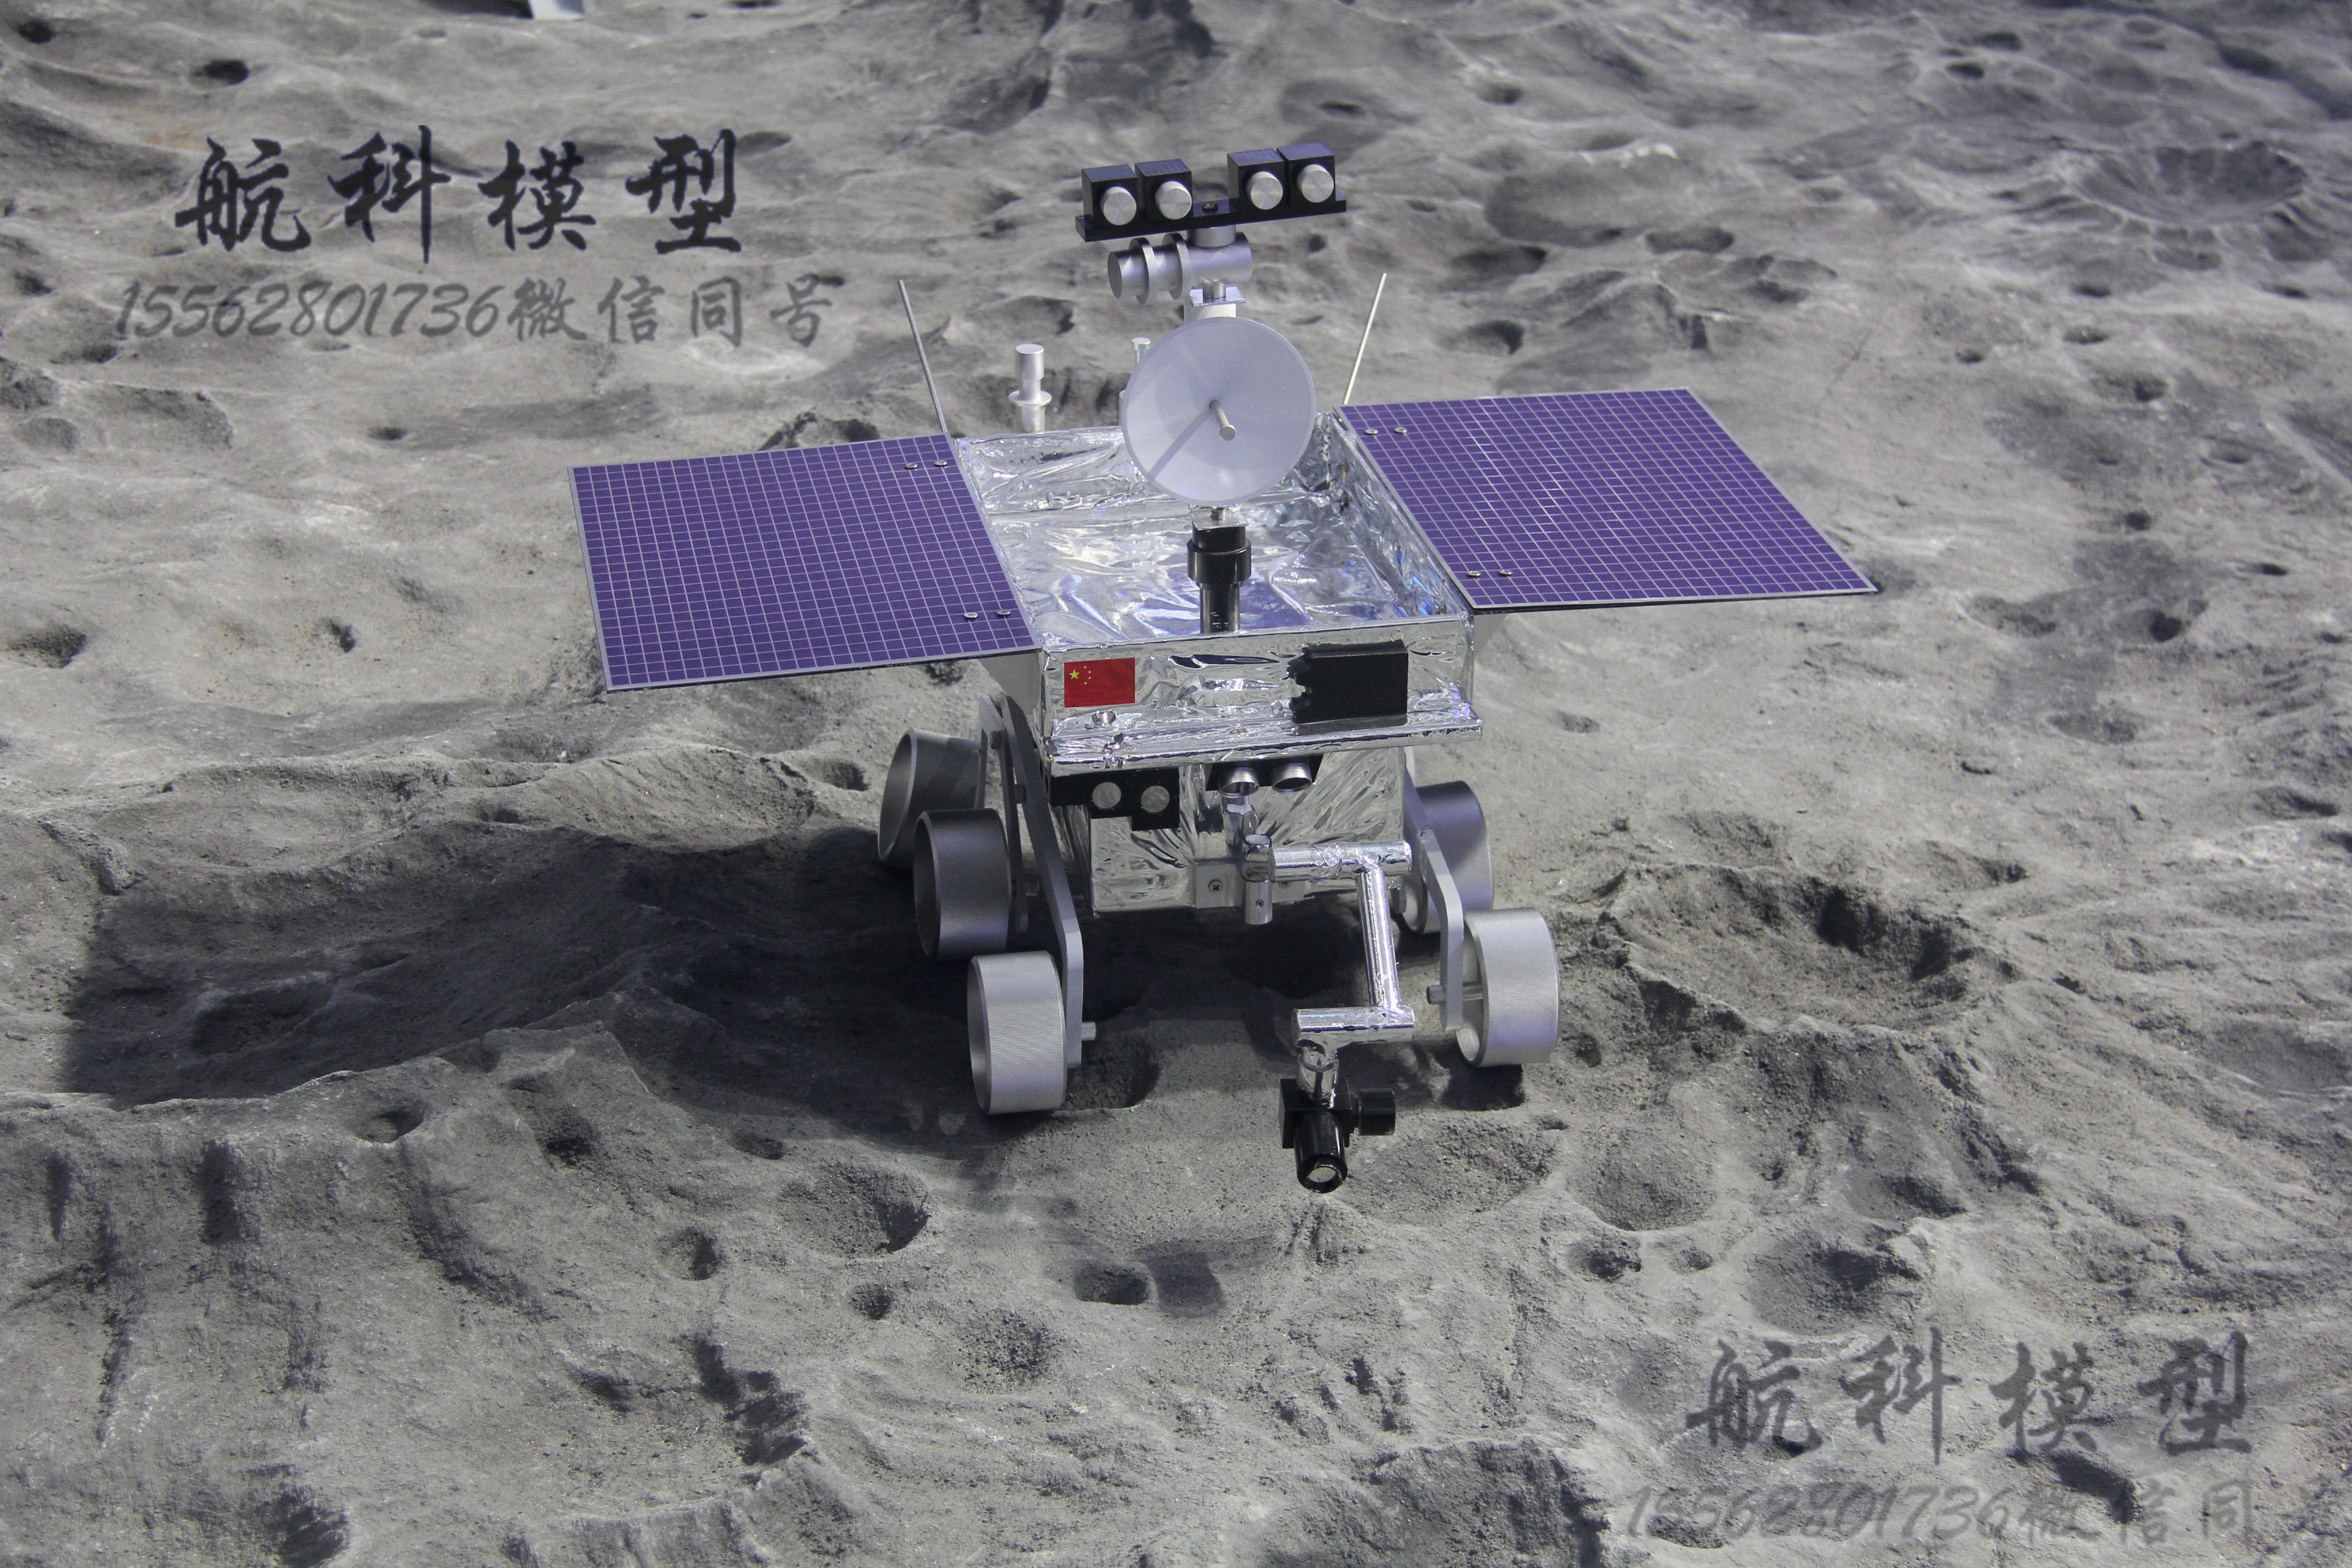 鹊桥卫星模型嫦娥四号探月模型玉兔二号模型嫦娥四号模型中国探月计划